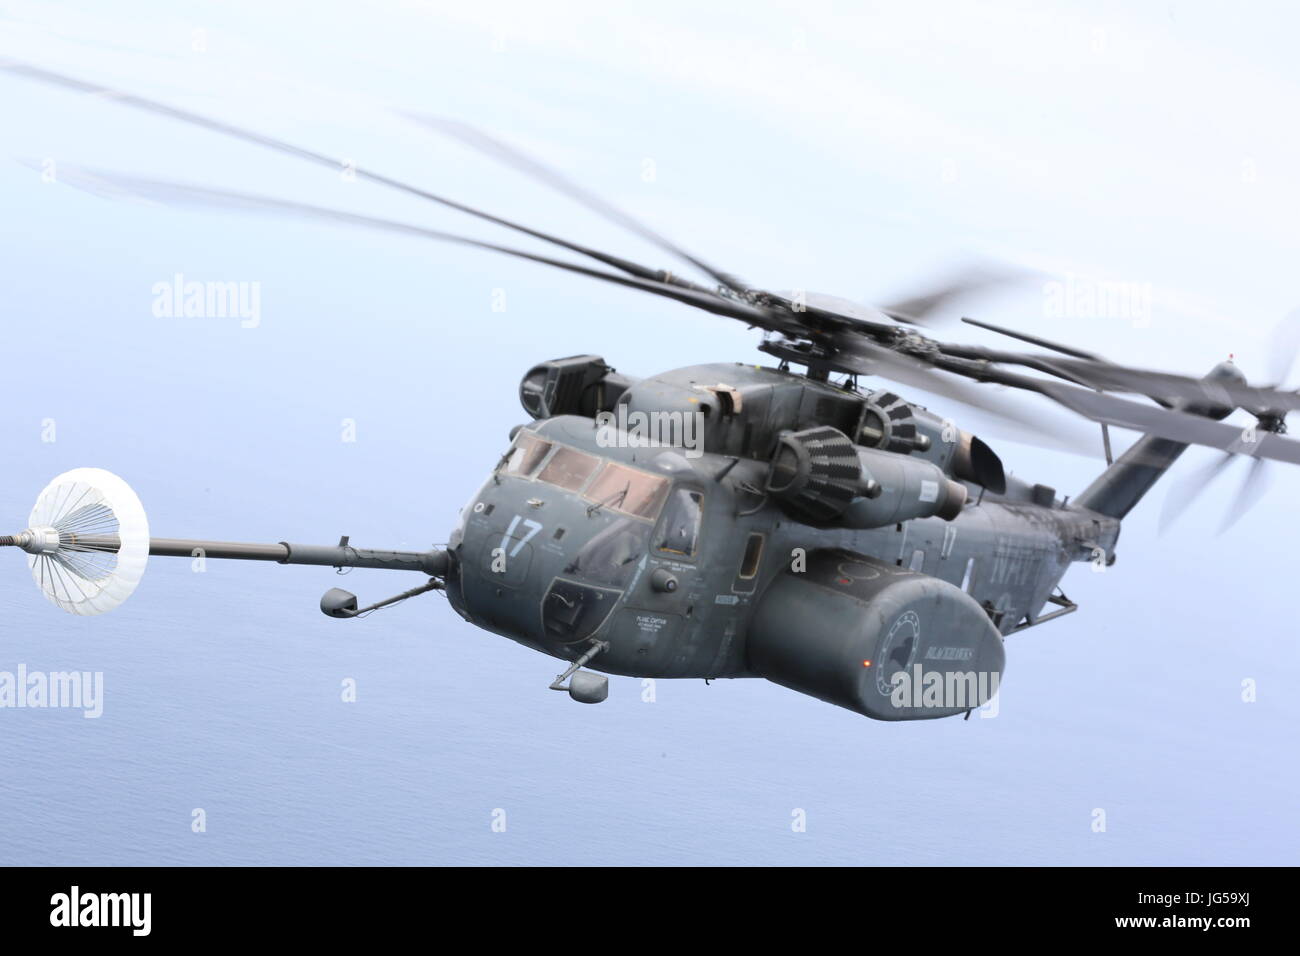 La Marine américaine d'un MH-53E Sea Dragon effectue un ravitaillement aérien hélicoptère lors d'un vol d'entraînement sur l'océan Atlantique près de la Marine Corps Air Station Cherry Point le 21 juin 2017 dans la région de Cherry Point, Caroline du Nord. (Photo par Skyler Pumphret Planetpix via) Banque D'Images